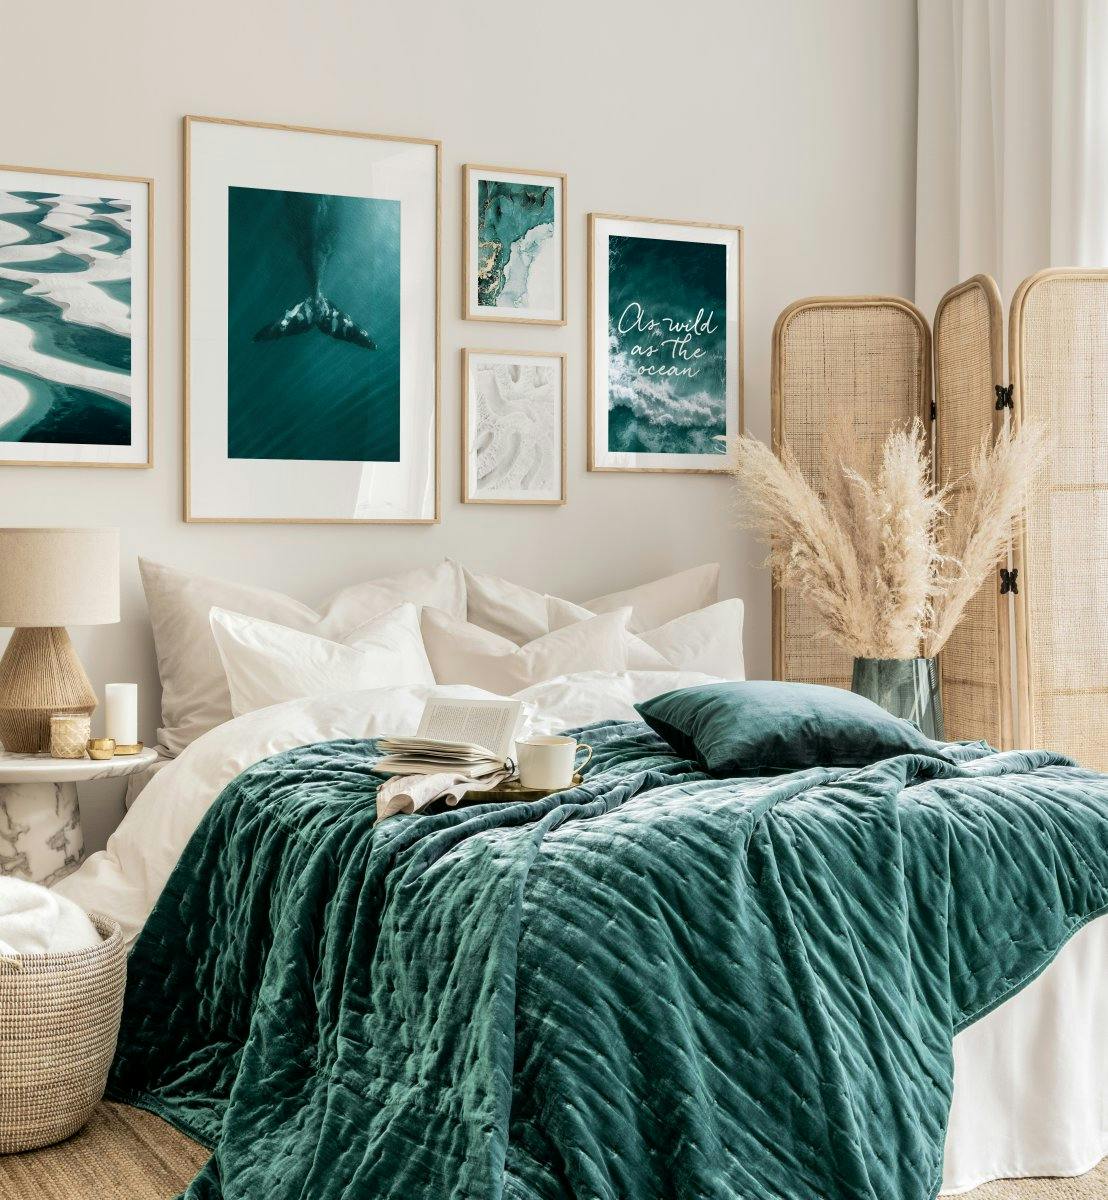 Diepblauwe oceaan fotowand blauwe wanddecoratie blauwe slaapkamer